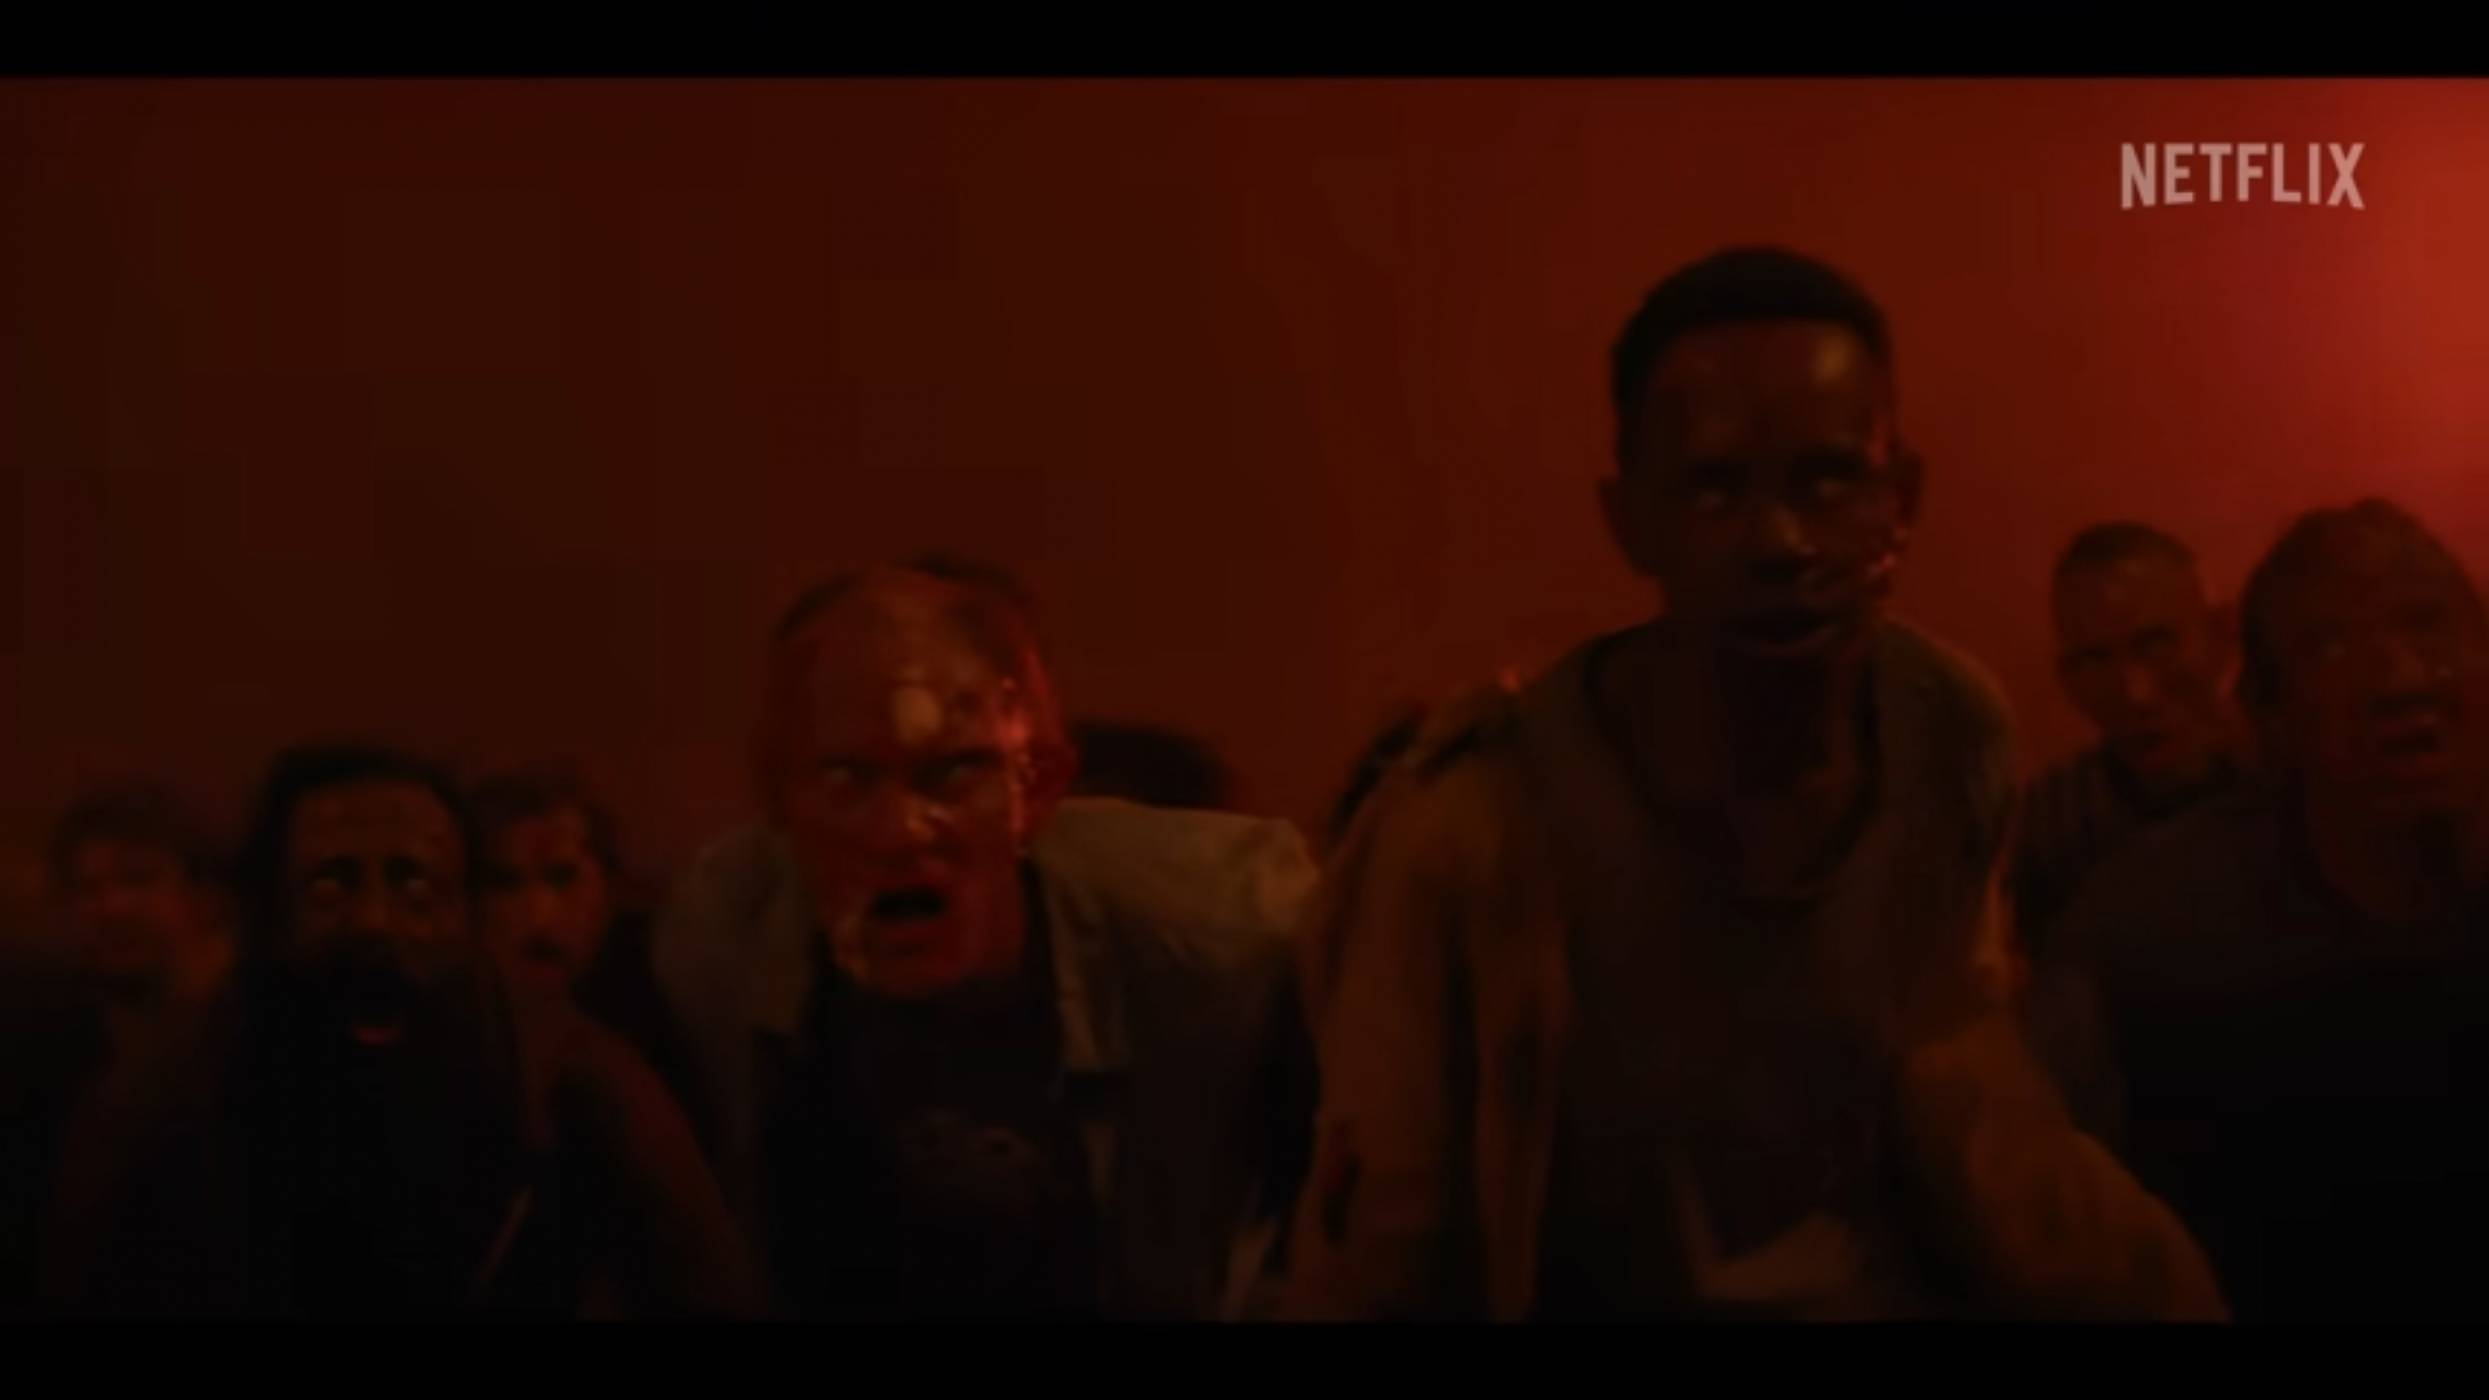 СТРАШНО! Първият трейлър на сериала Resident Evil по Netflix загатва за мрачно зомби бъдеще (ВИДЕО)